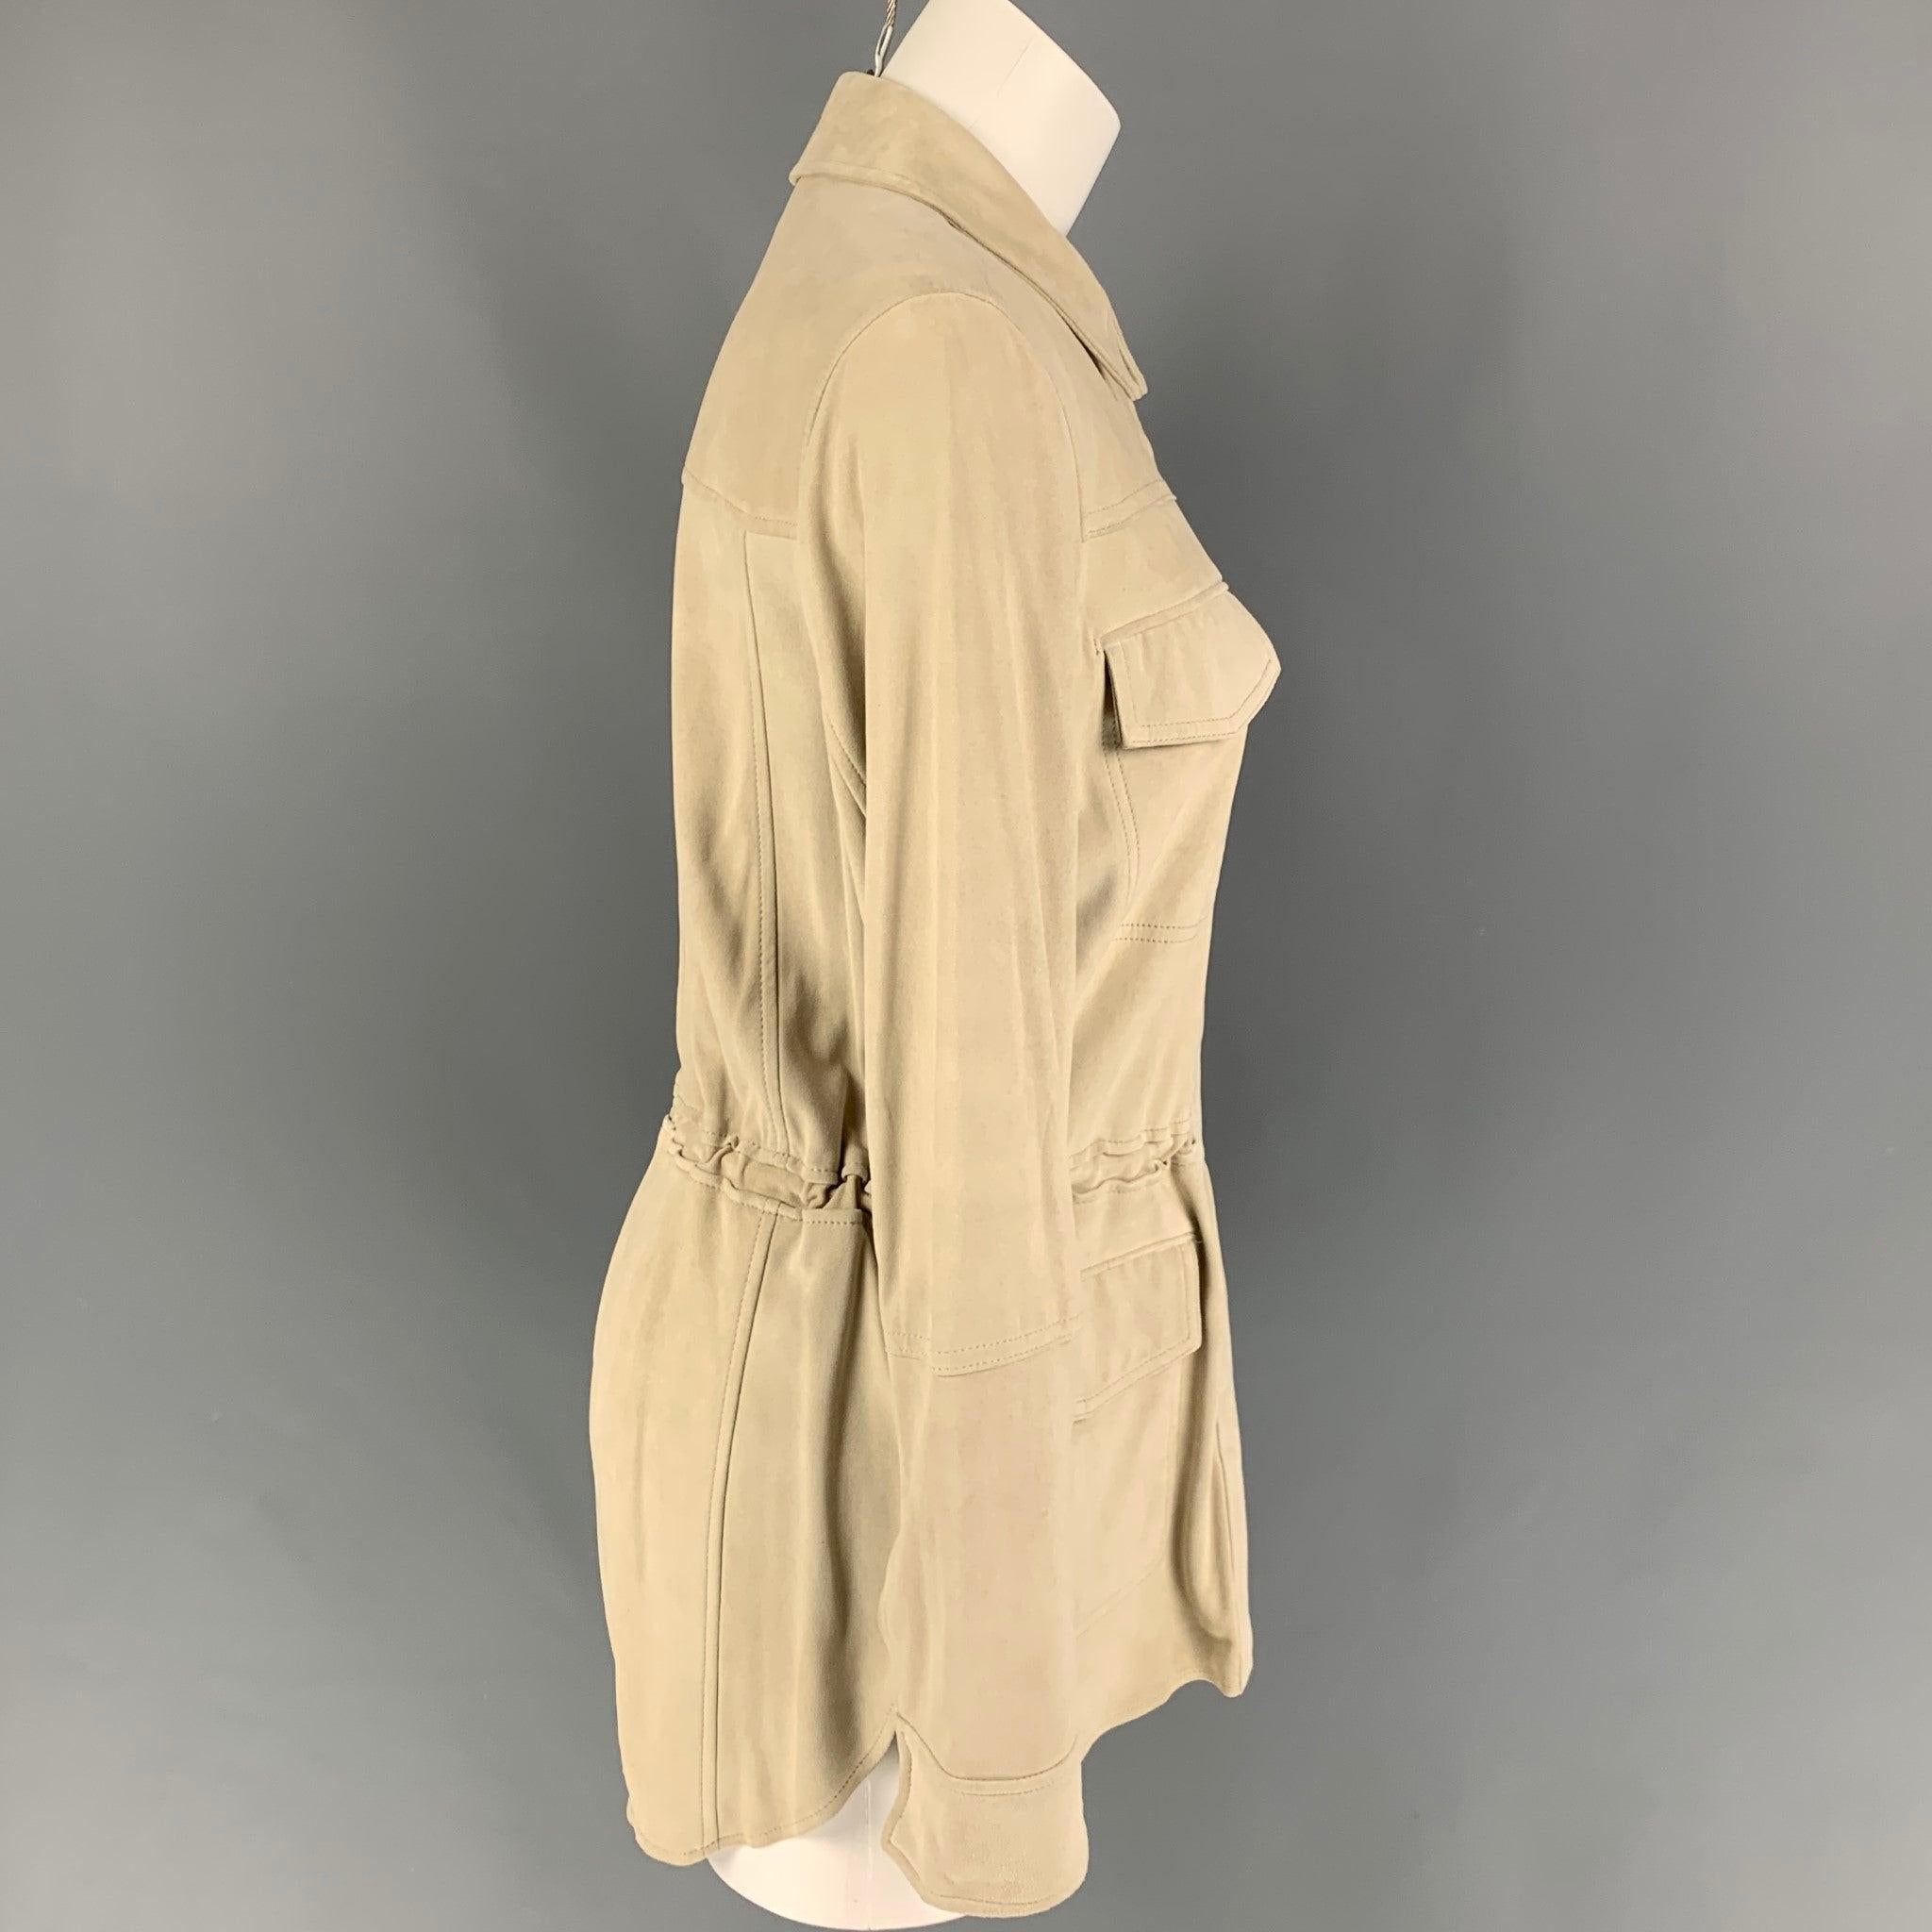 Cette veste parka VINCE en daim beige est dotée d'un cordon de serrage à la taille, de poches plaquées, d'un col rond et d'une fermeture à boutons-pression.
Nouveau avec des étiquettes. 

Marqué :   S 

Mesures : 
 
Épaule : 16 pouces  Poitrine : 38